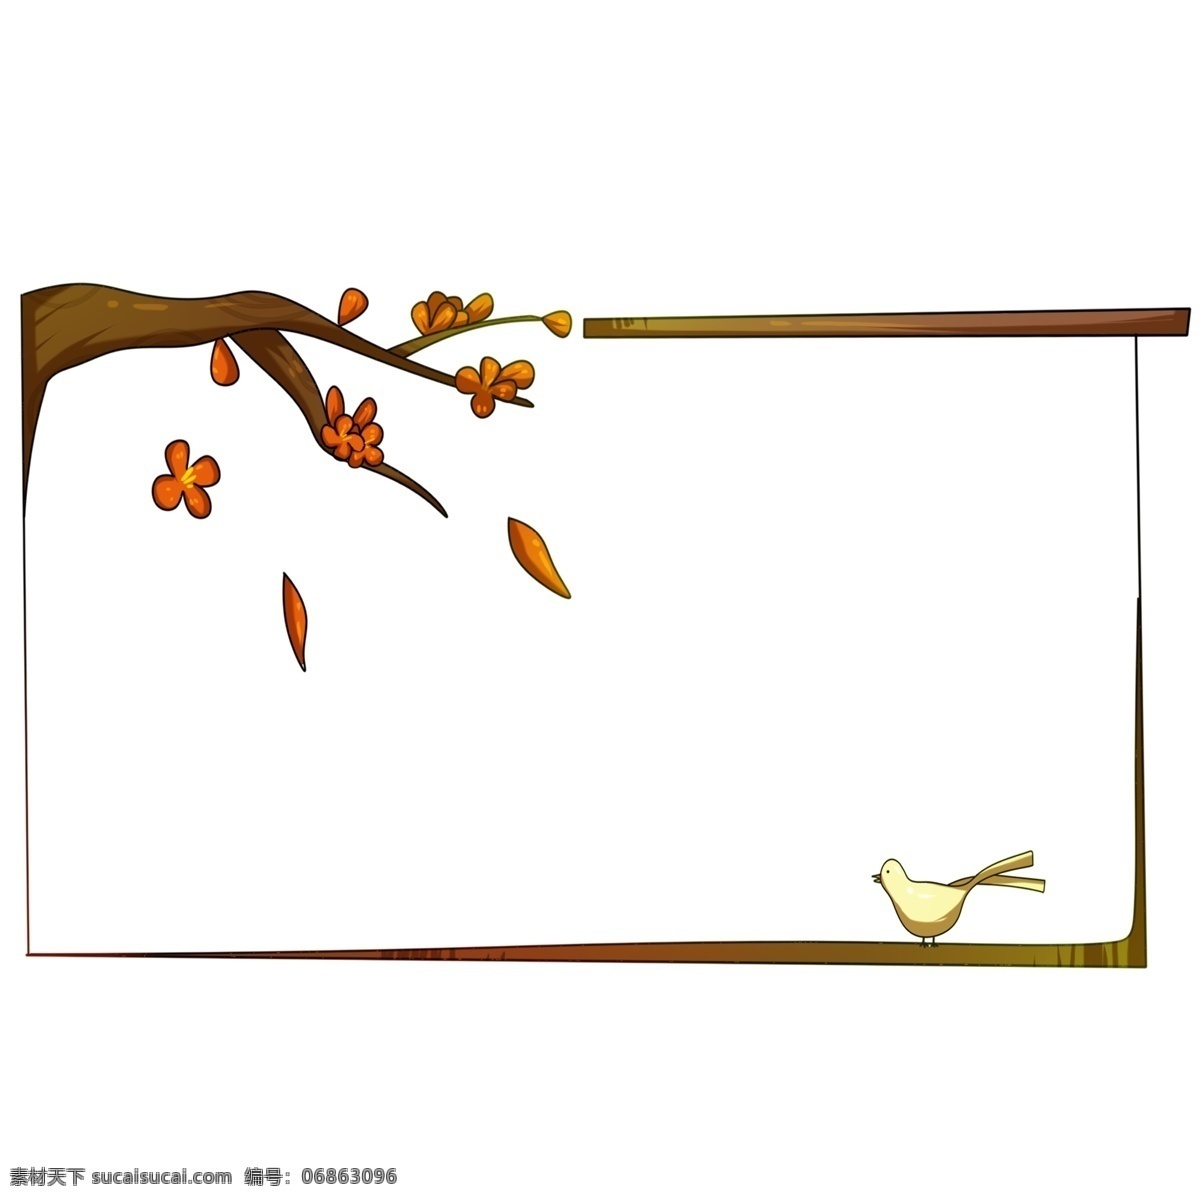 中国 风 黄色 树叶 边框 中国风边框 树叶边框插画 手绘边框 飘落的叶子 鸽子 信鸽